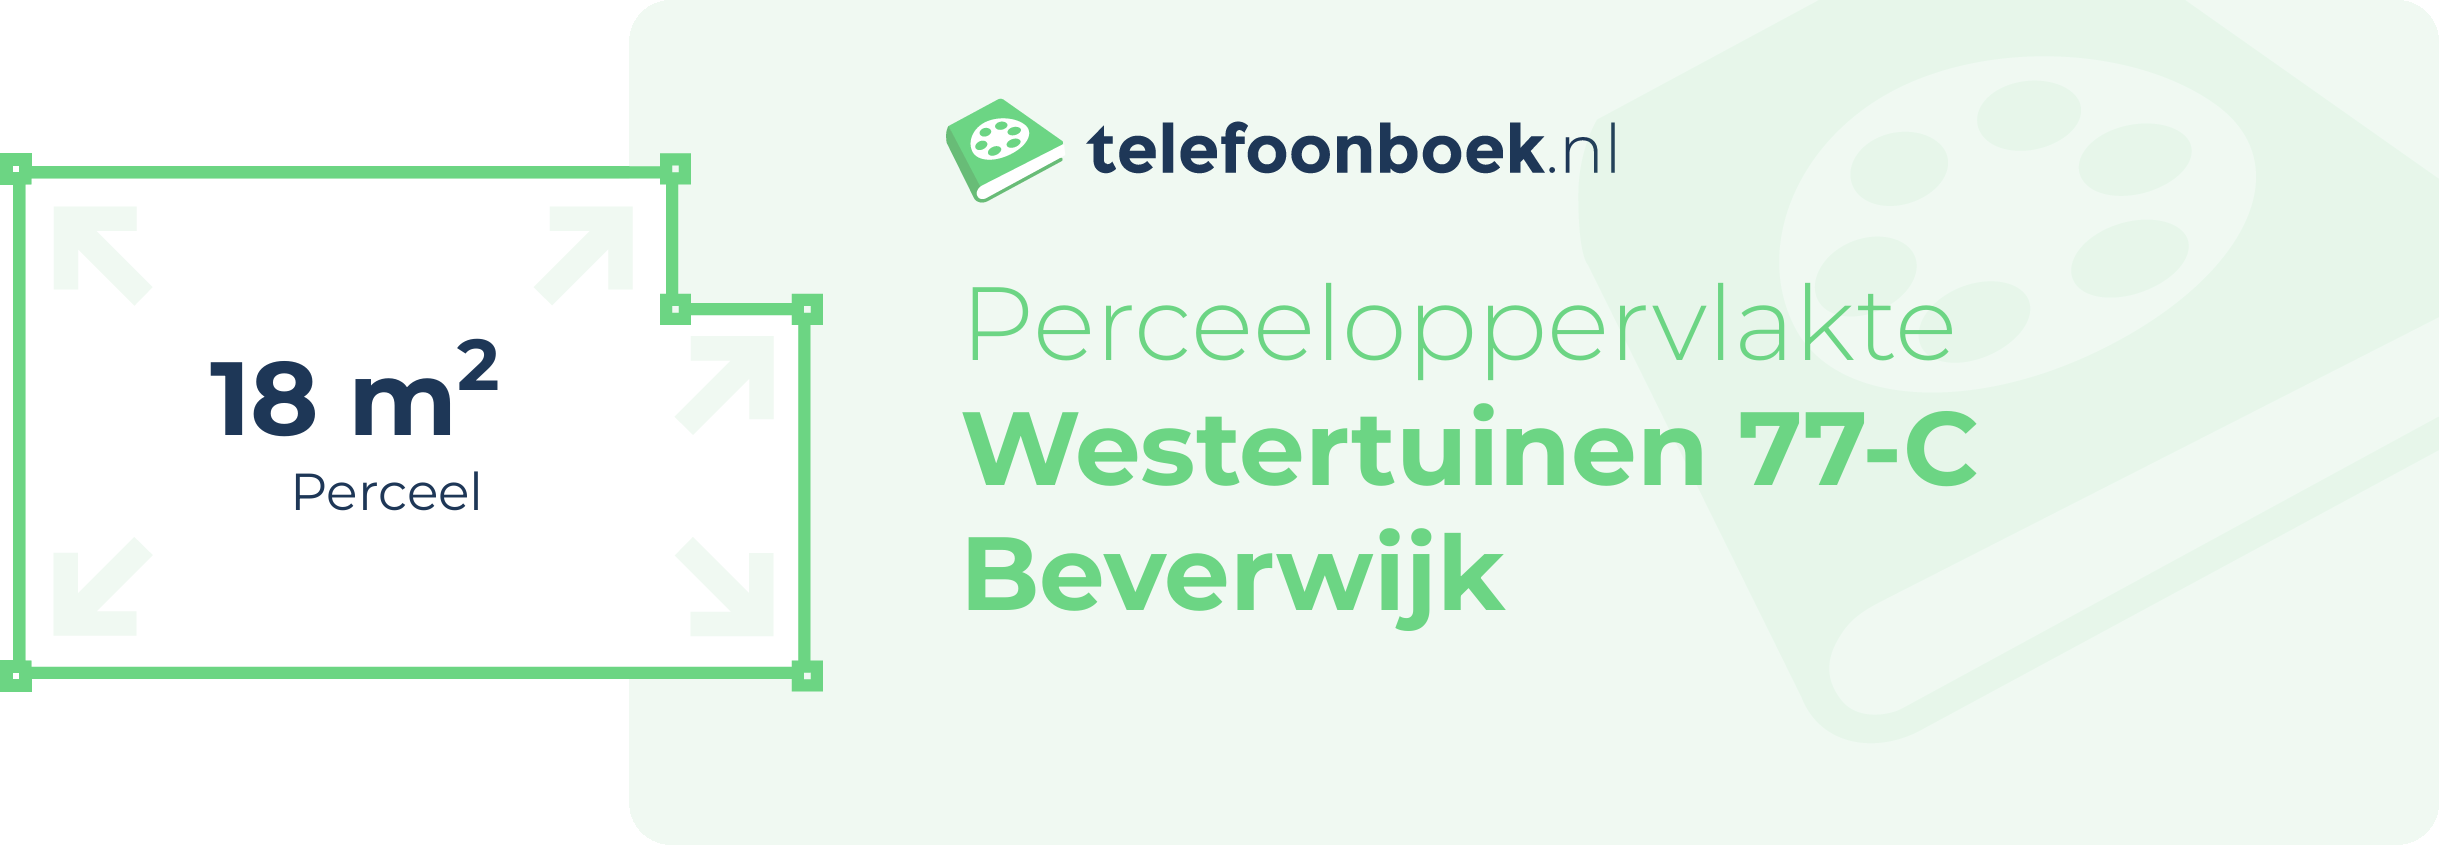 Perceeloppervlakte Westertuinen 77-C Beverwijk